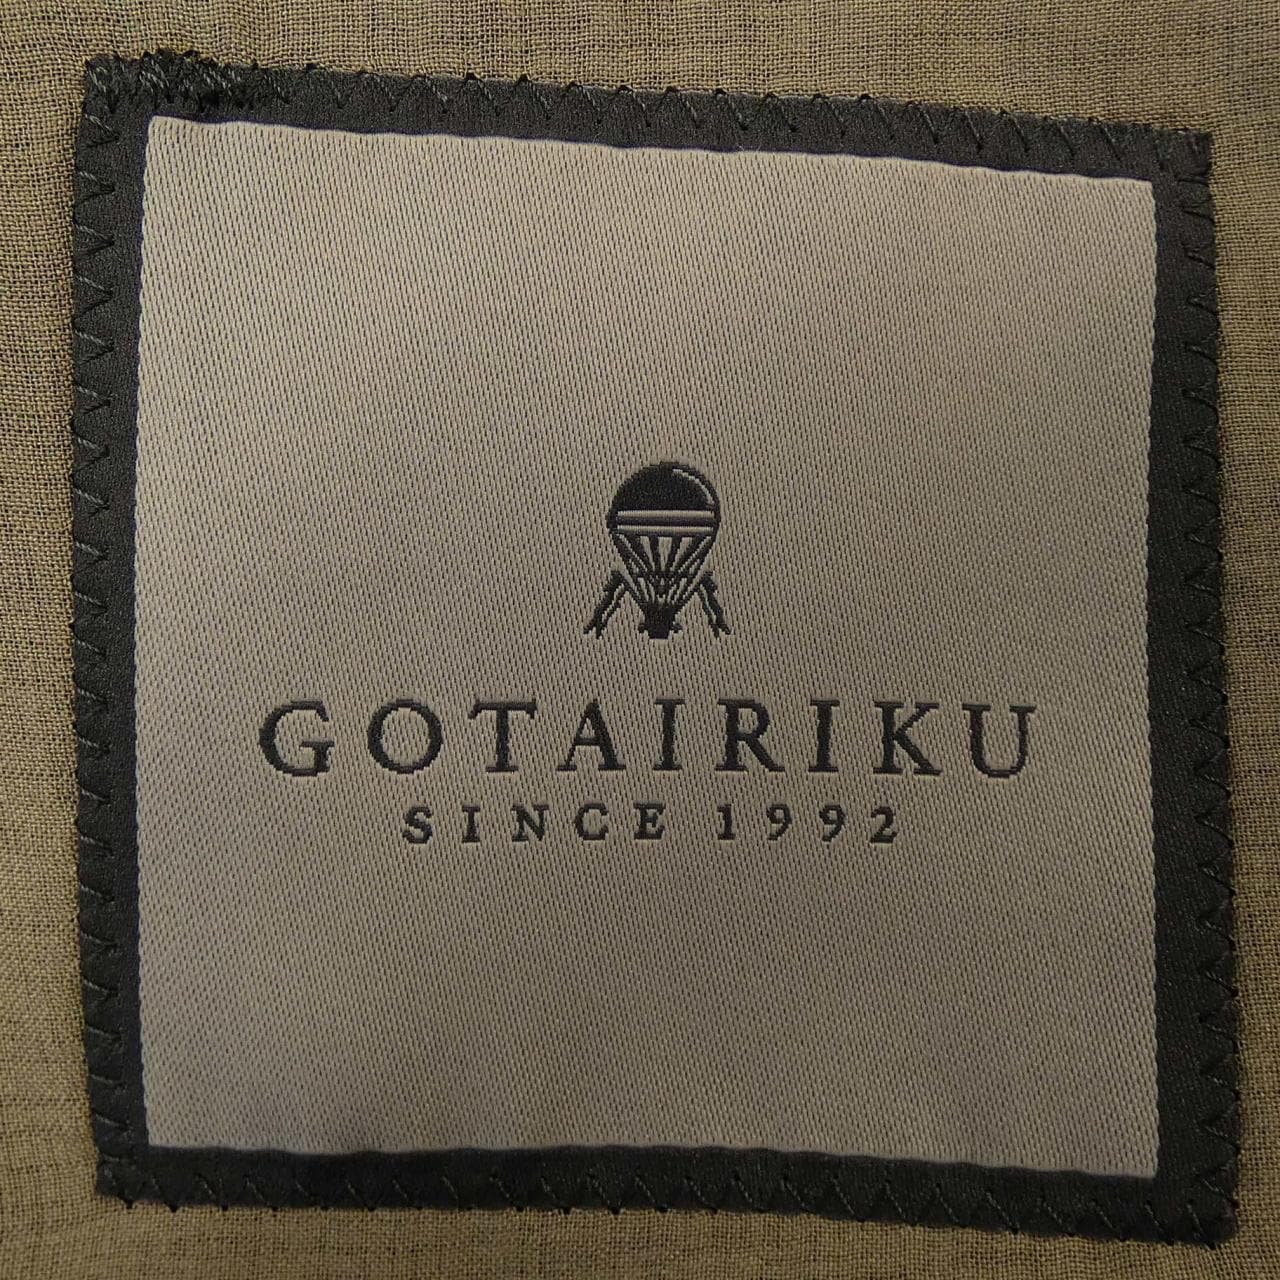 GOTAIRIKU suit